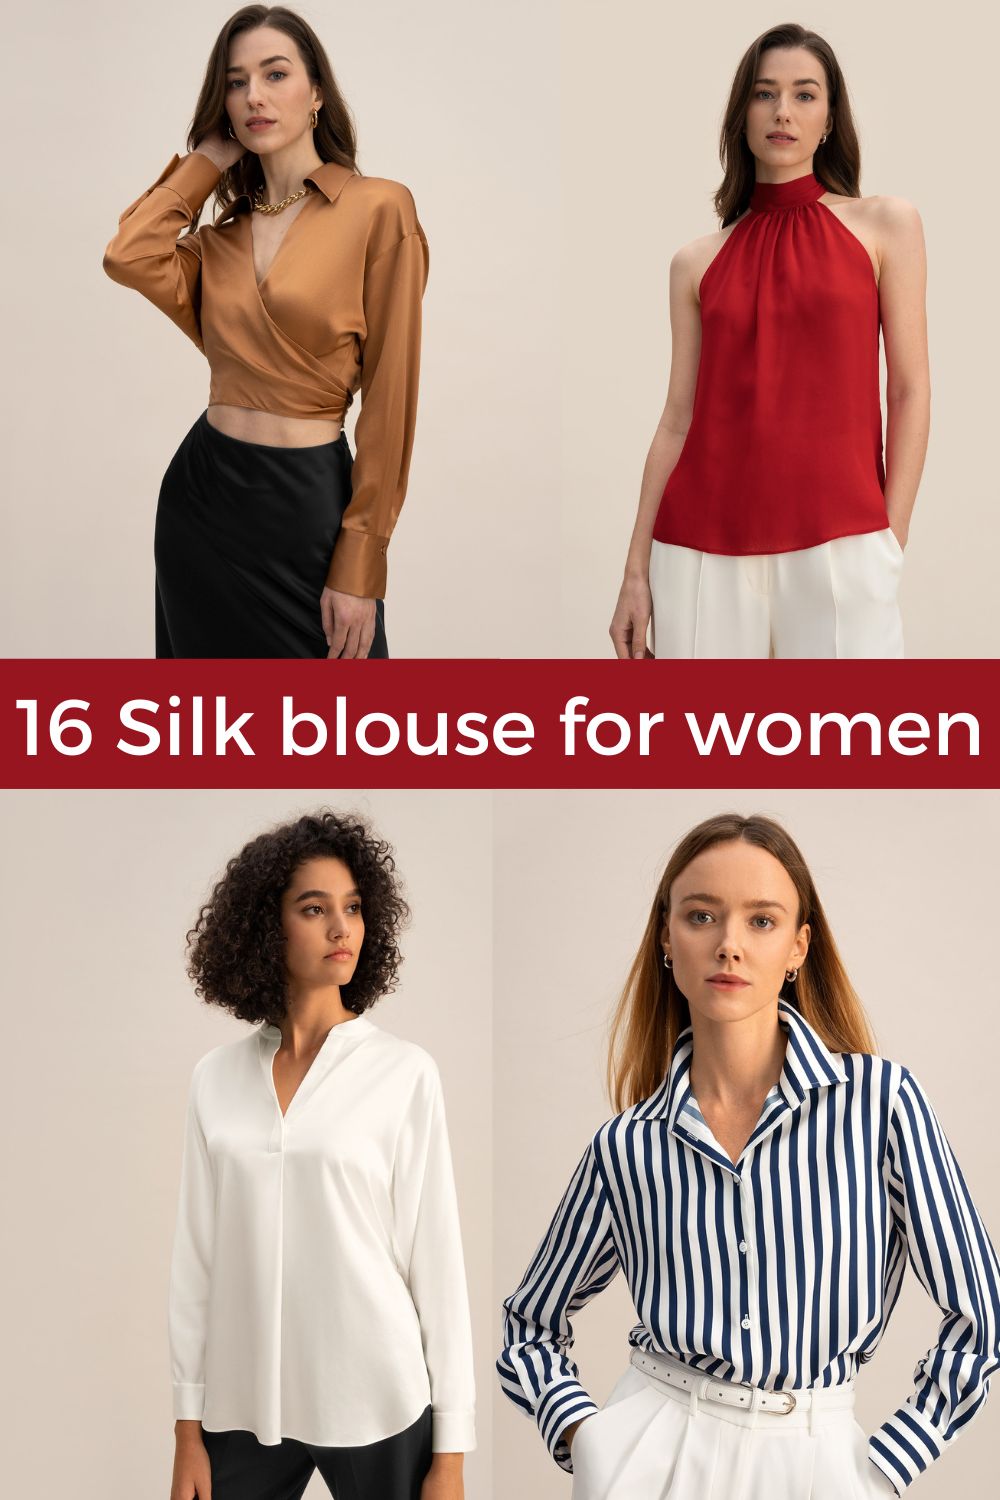 16 Silk blouse for women